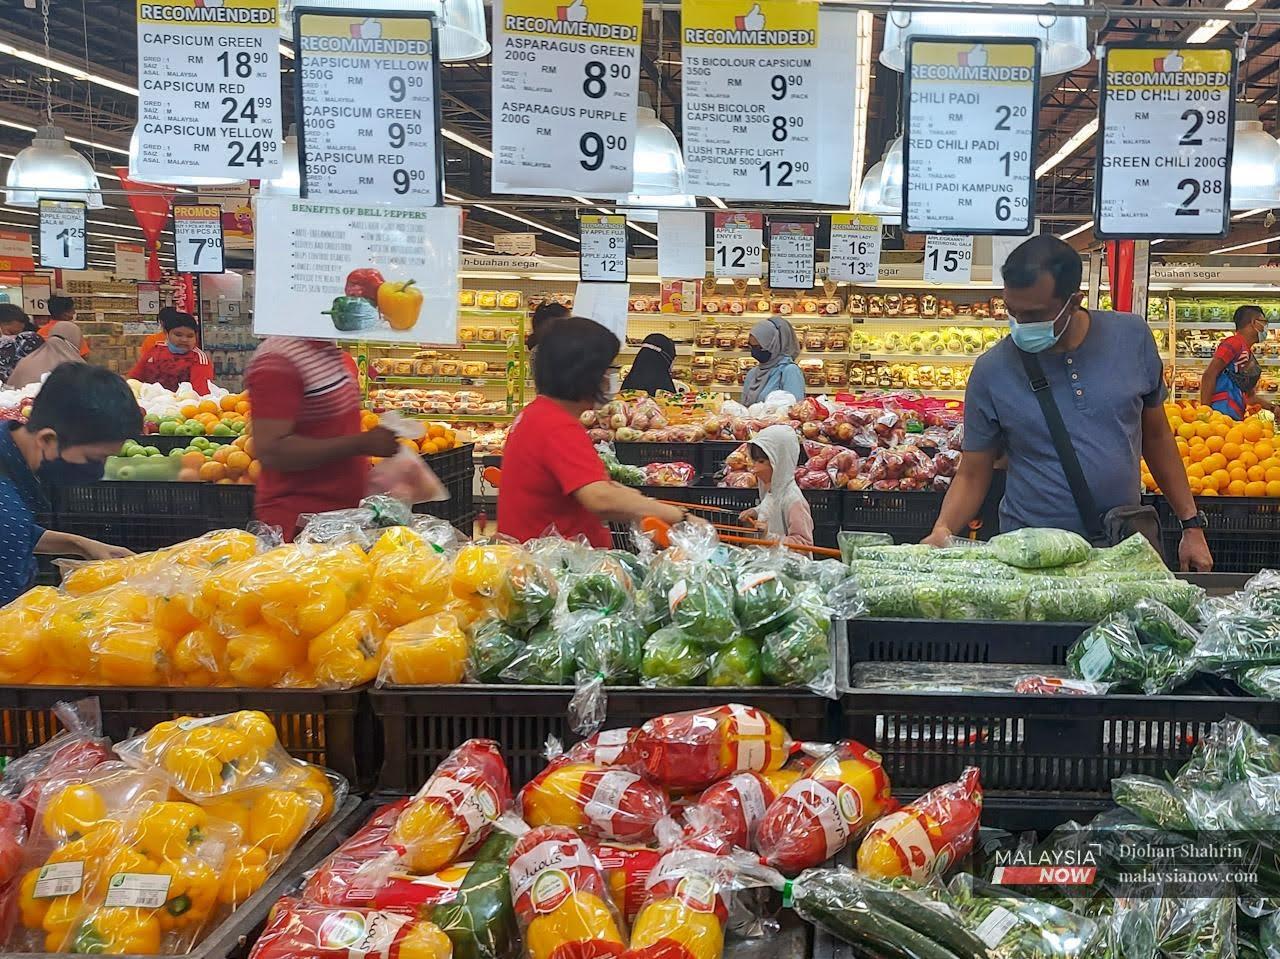 Pelanggan memilih barangan keperluan di sebuah pasar raya di ibu negara Kuala Lumpur.